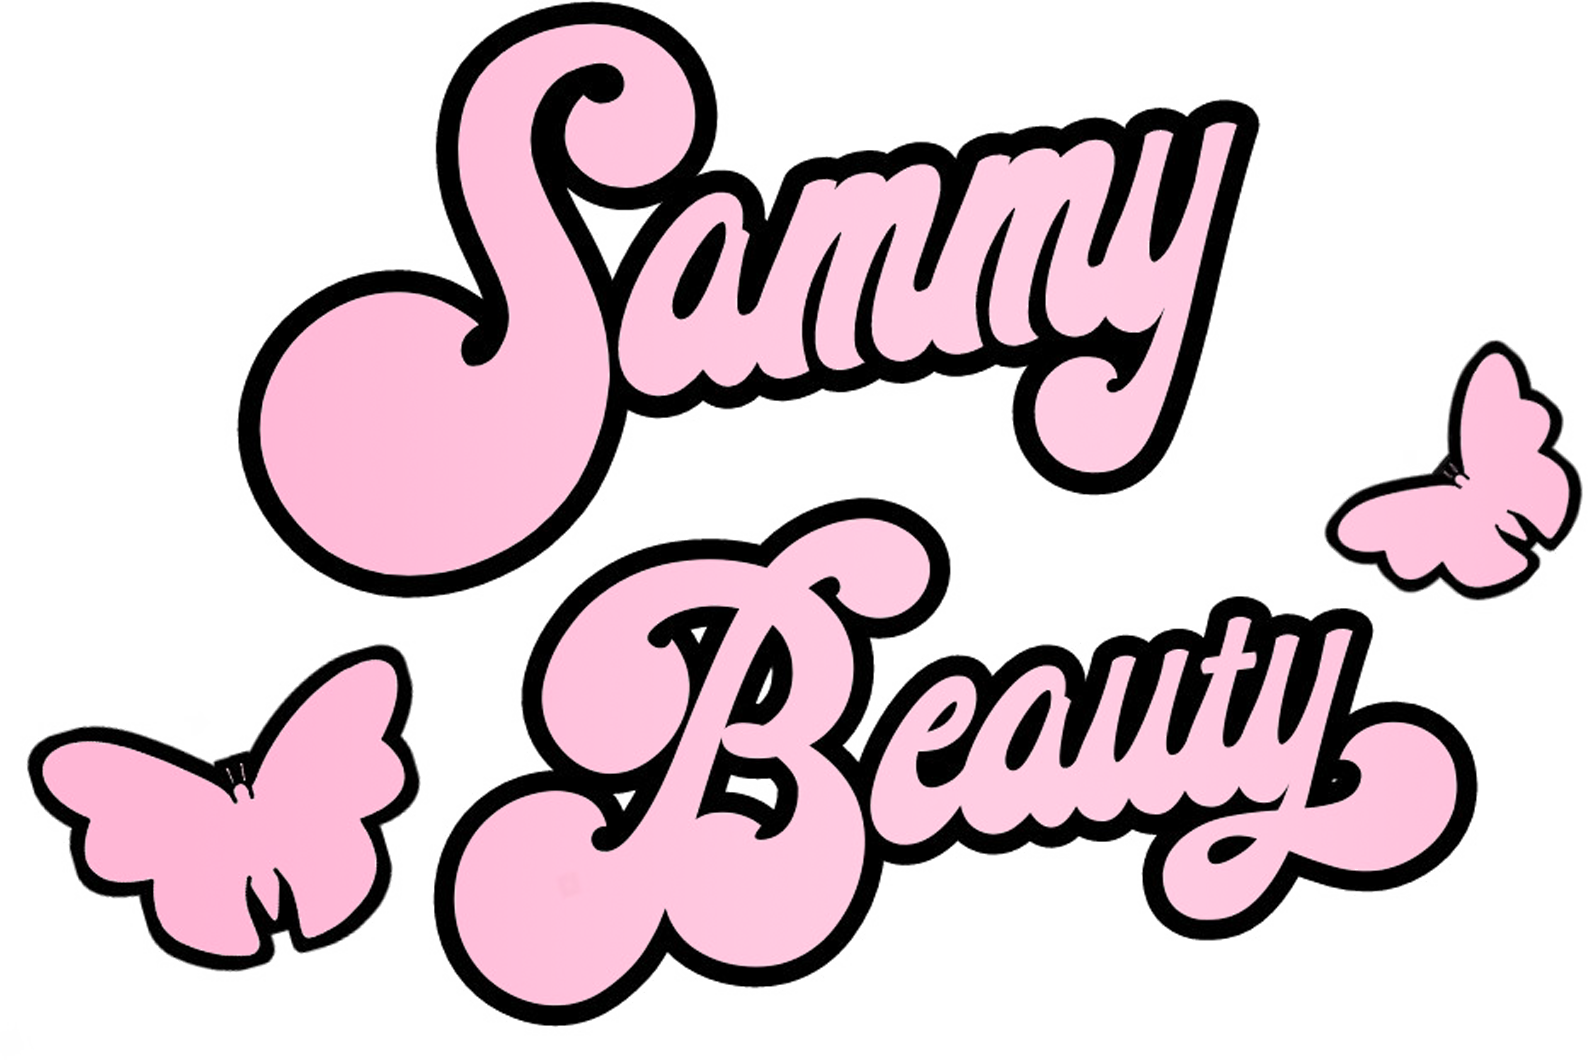 Sammy Beauty 